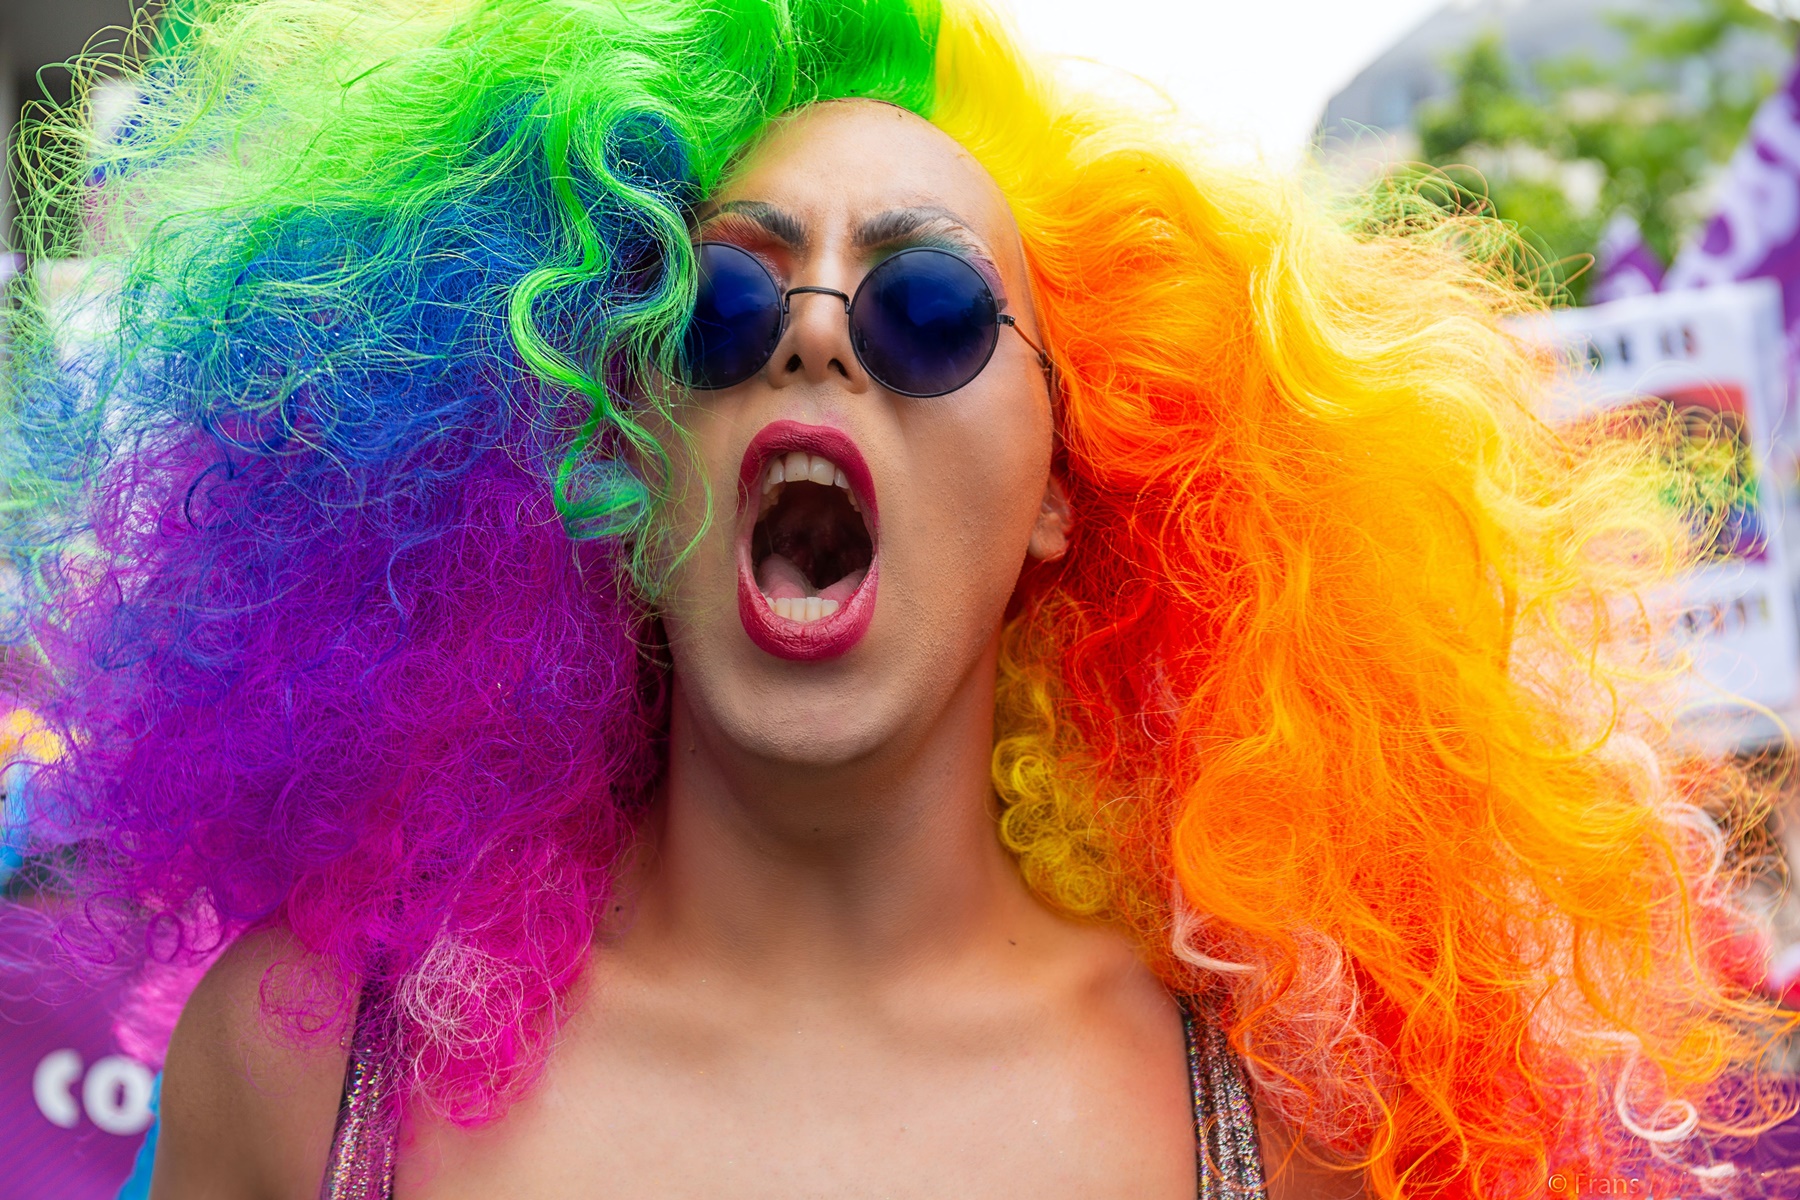 ΟΦΗ – Pride: Άλλαξε το σήμα του στα social για να στηρίξει την ΛΟΑΤΚΙ+ κοινότητα